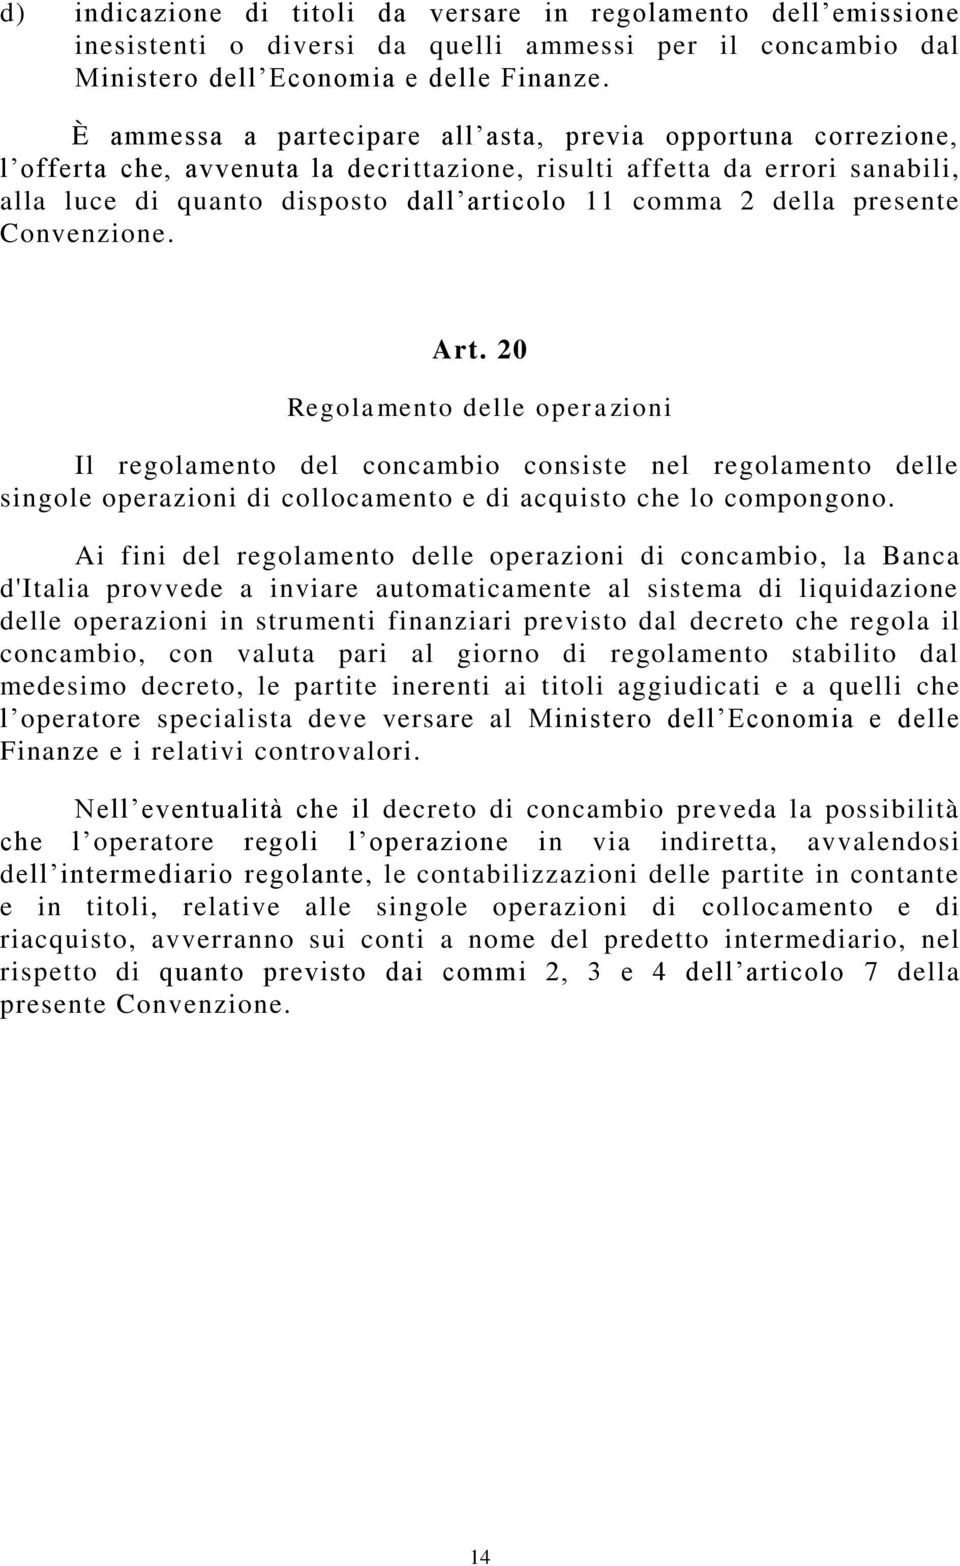 della presente Convenzione. Art. 20 Regolamento delle operazioni Il regolamento del concambio consiste nel regolamento delle singole operazioni di collocamento e di acquisto che lo compongono.